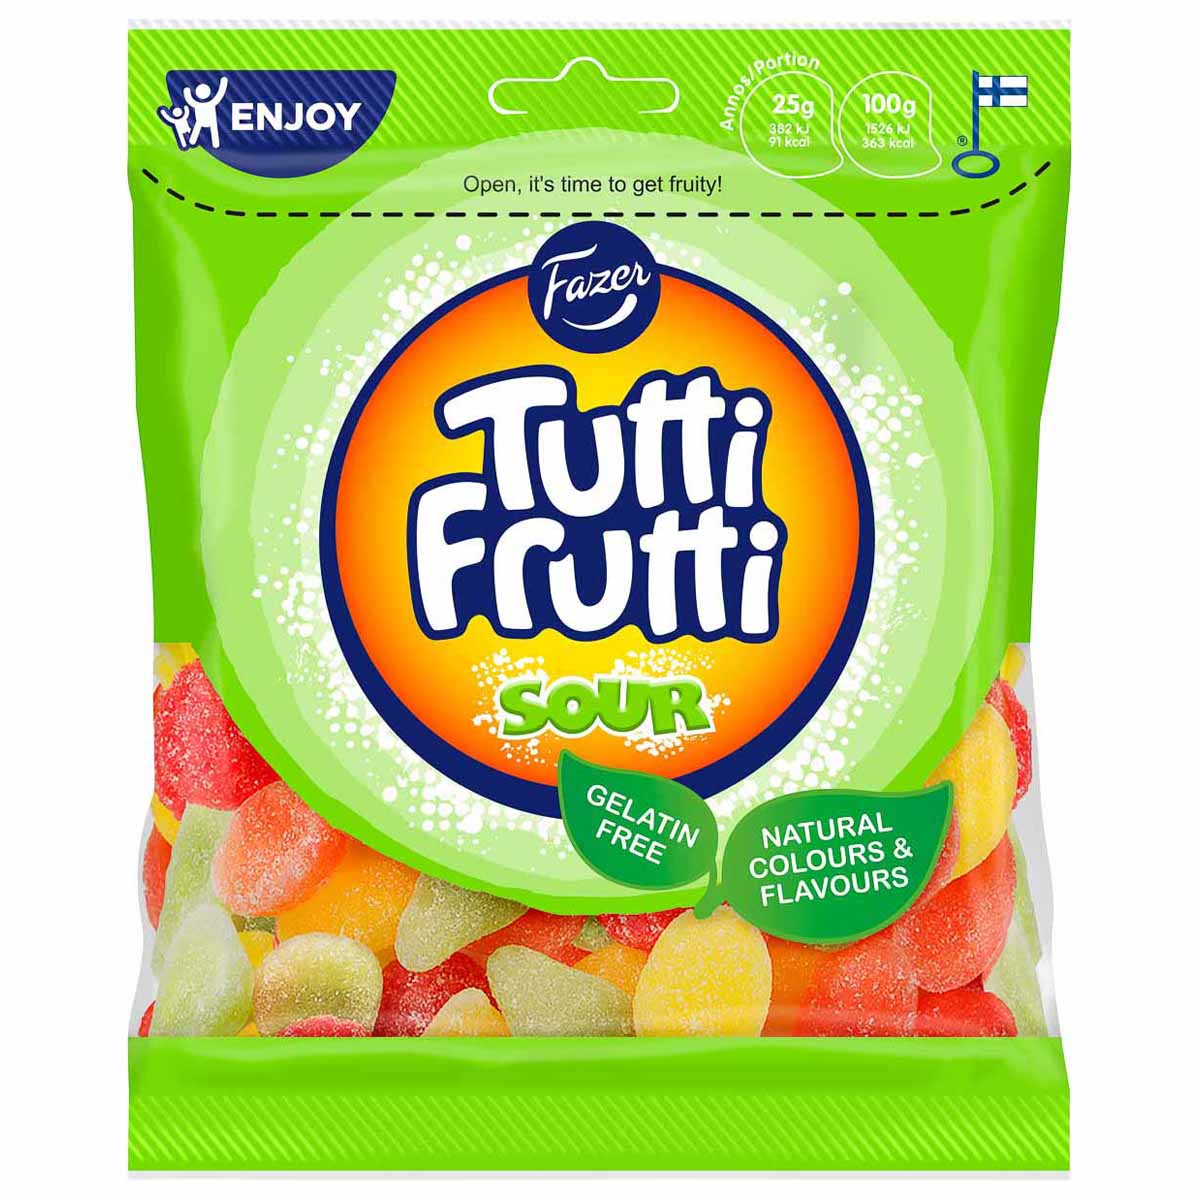 Godispåse Tutti frutti sour 120 g